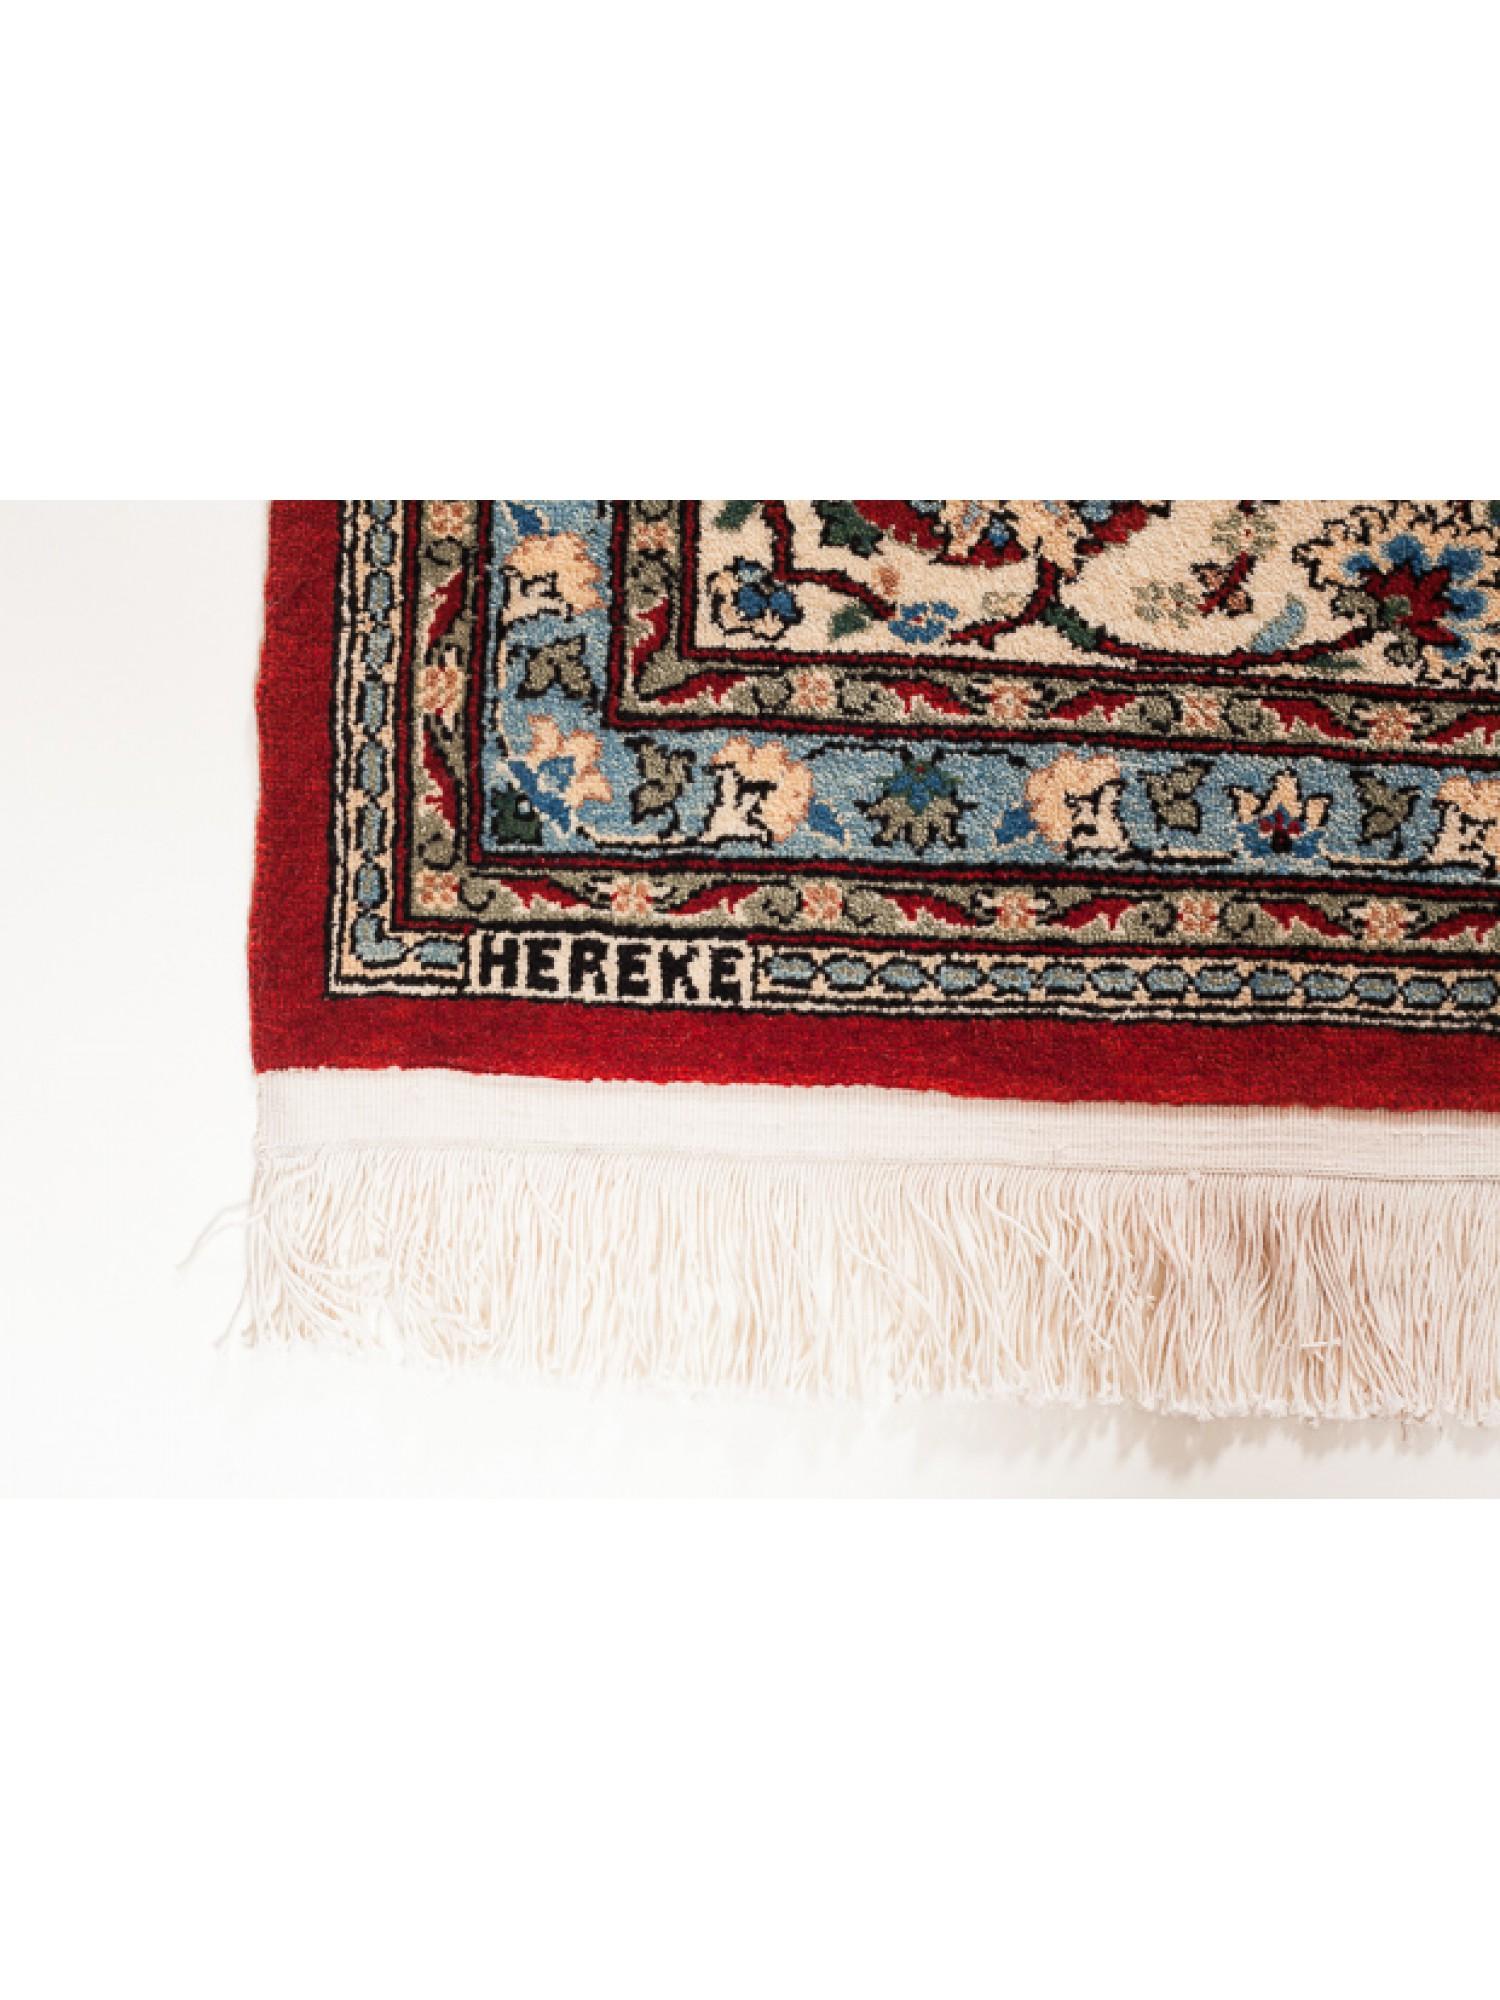 Dieser einzigartige Wollteppich von Hereke gehört zu den hochwertigsten Teppichen aus der Hereke-Werkstatt. Ein Blumengitter auf einem tiefroten Hintergrund, die Feinheit des Gewebes, der Einsatz von Farbe und das elegante und raffinierte Design. Es